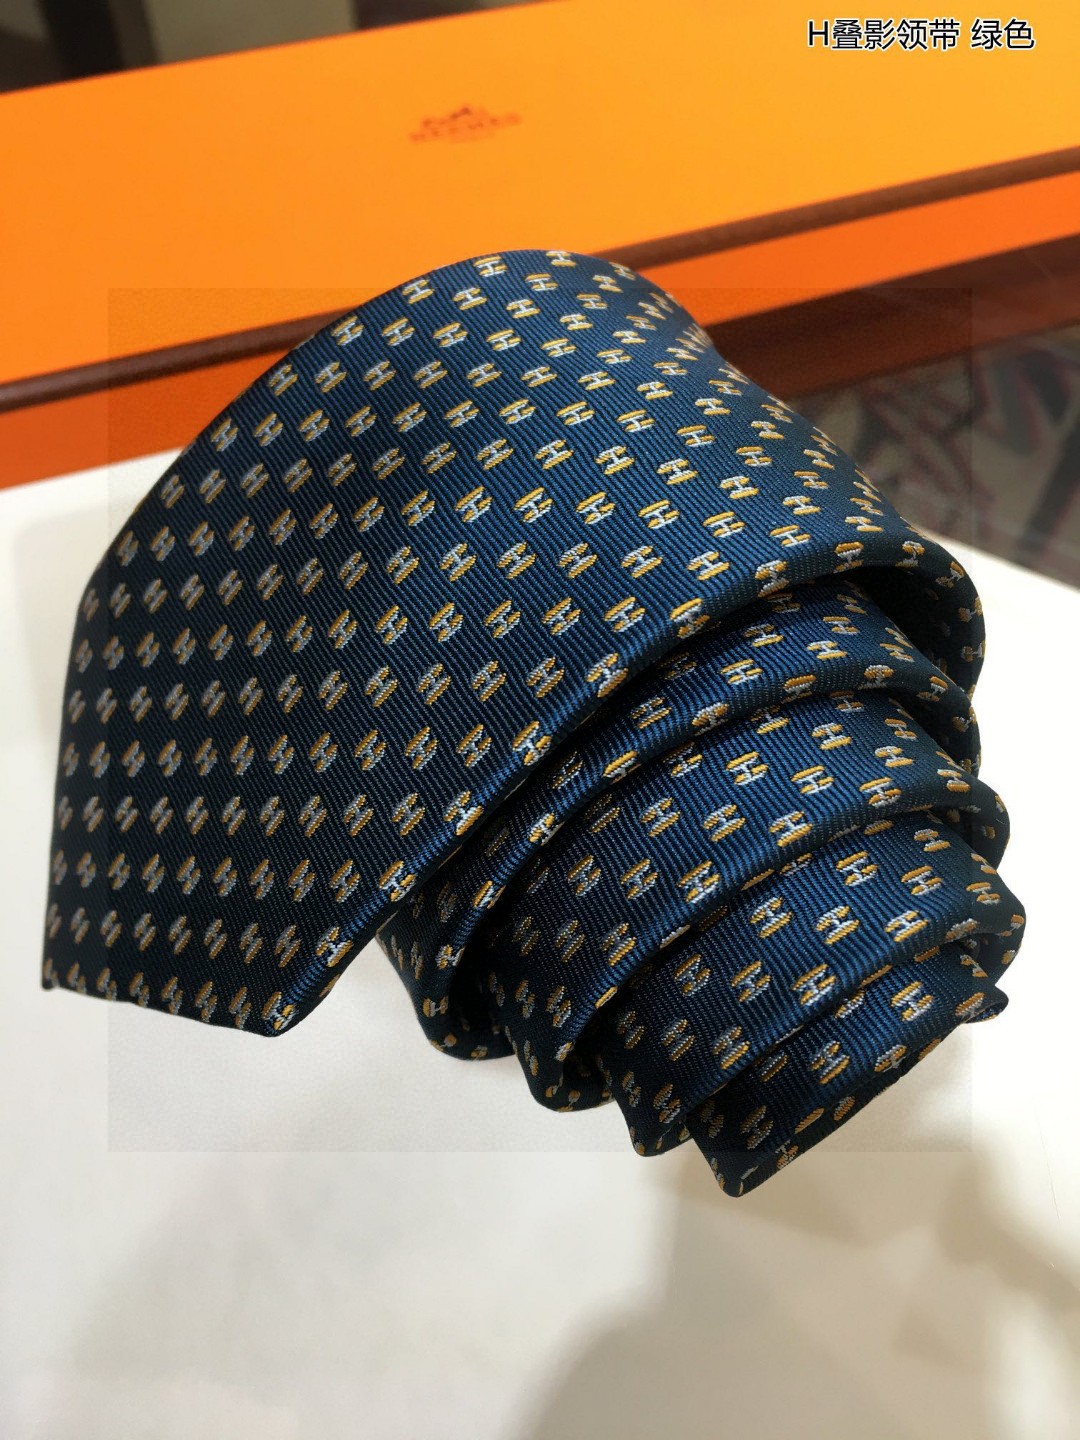 特价男士新款领带系列H叠影领带稀有H家每年都有一千条不同印花的领带面世从最初的多以几何图案表现骑术活动为